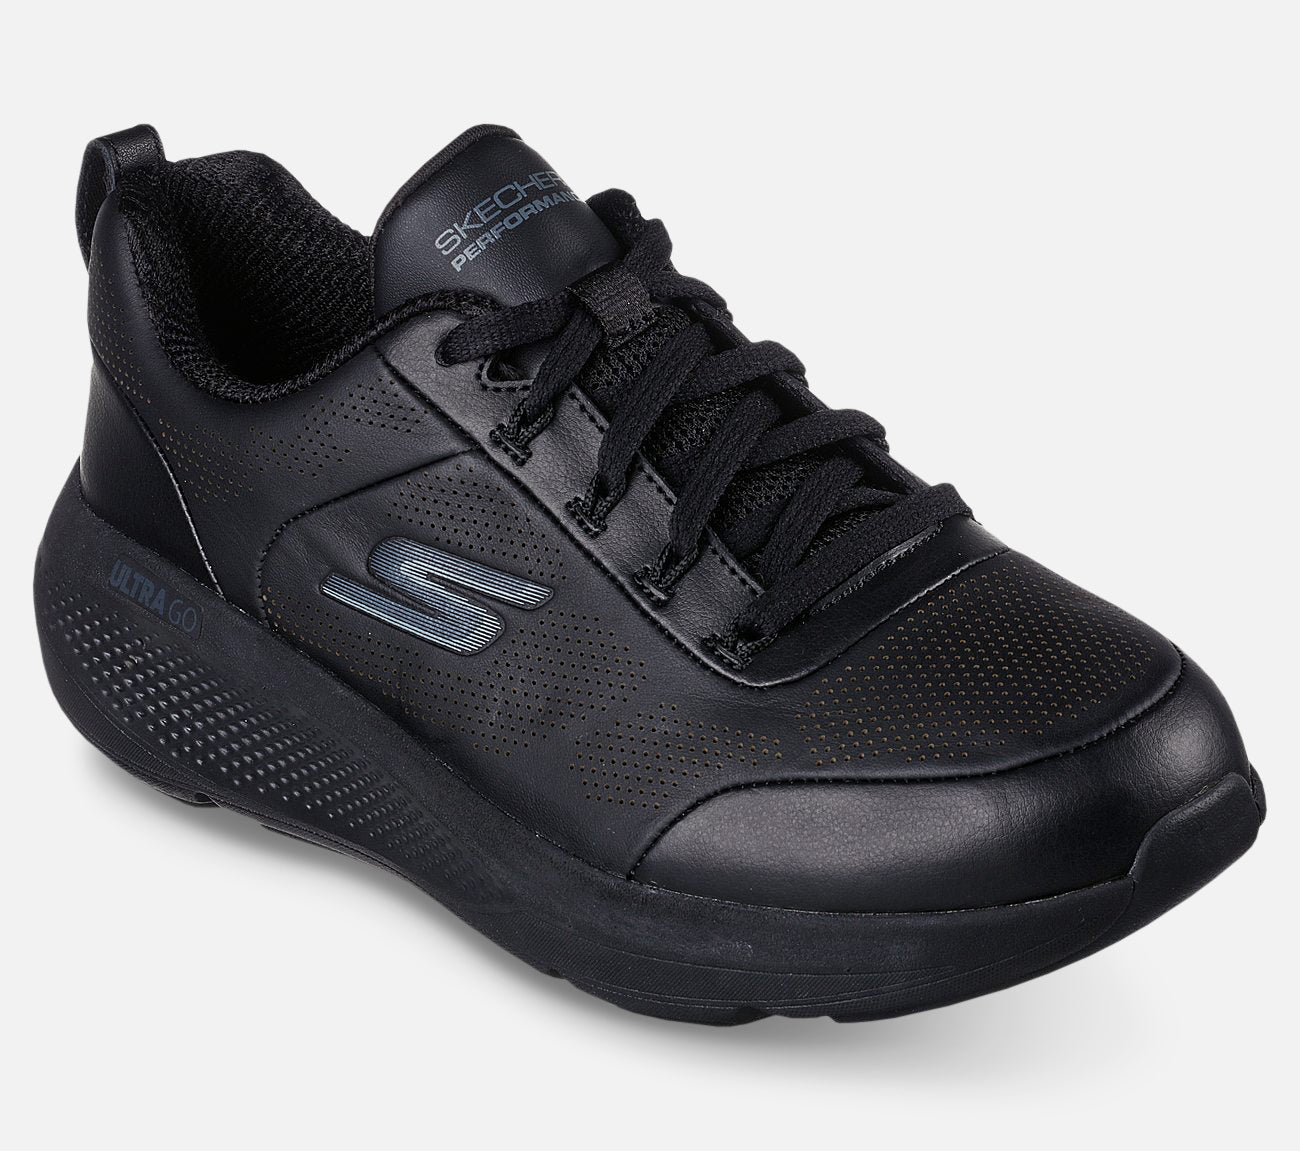 GO RUN Elevate - Upper Class Shoe Skechers